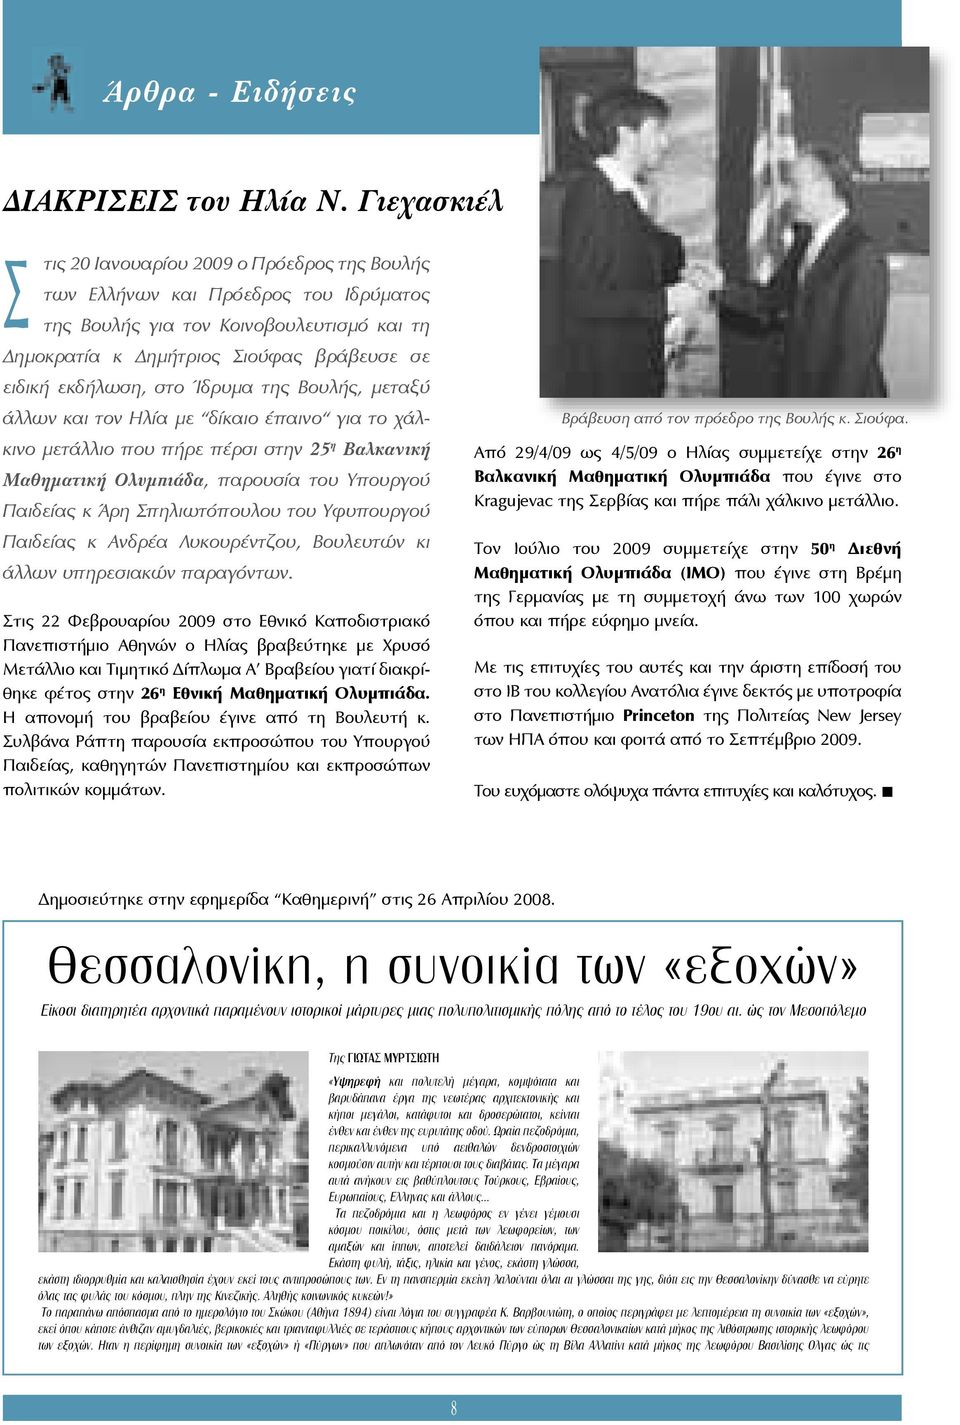 στο Ίδρυμα της Βουλής, μεταξύ άλλων και τον Ηλία με δίκαιο έπαινο για το χάλκινο μετάλλιο που πήρε πέρσι στην 25 η Βαλκανική Μαθηματική Ολυμπιάδα, παρουσία του Υπουργού Παιδείας κ Άρη Σπηλιωτόπουλου